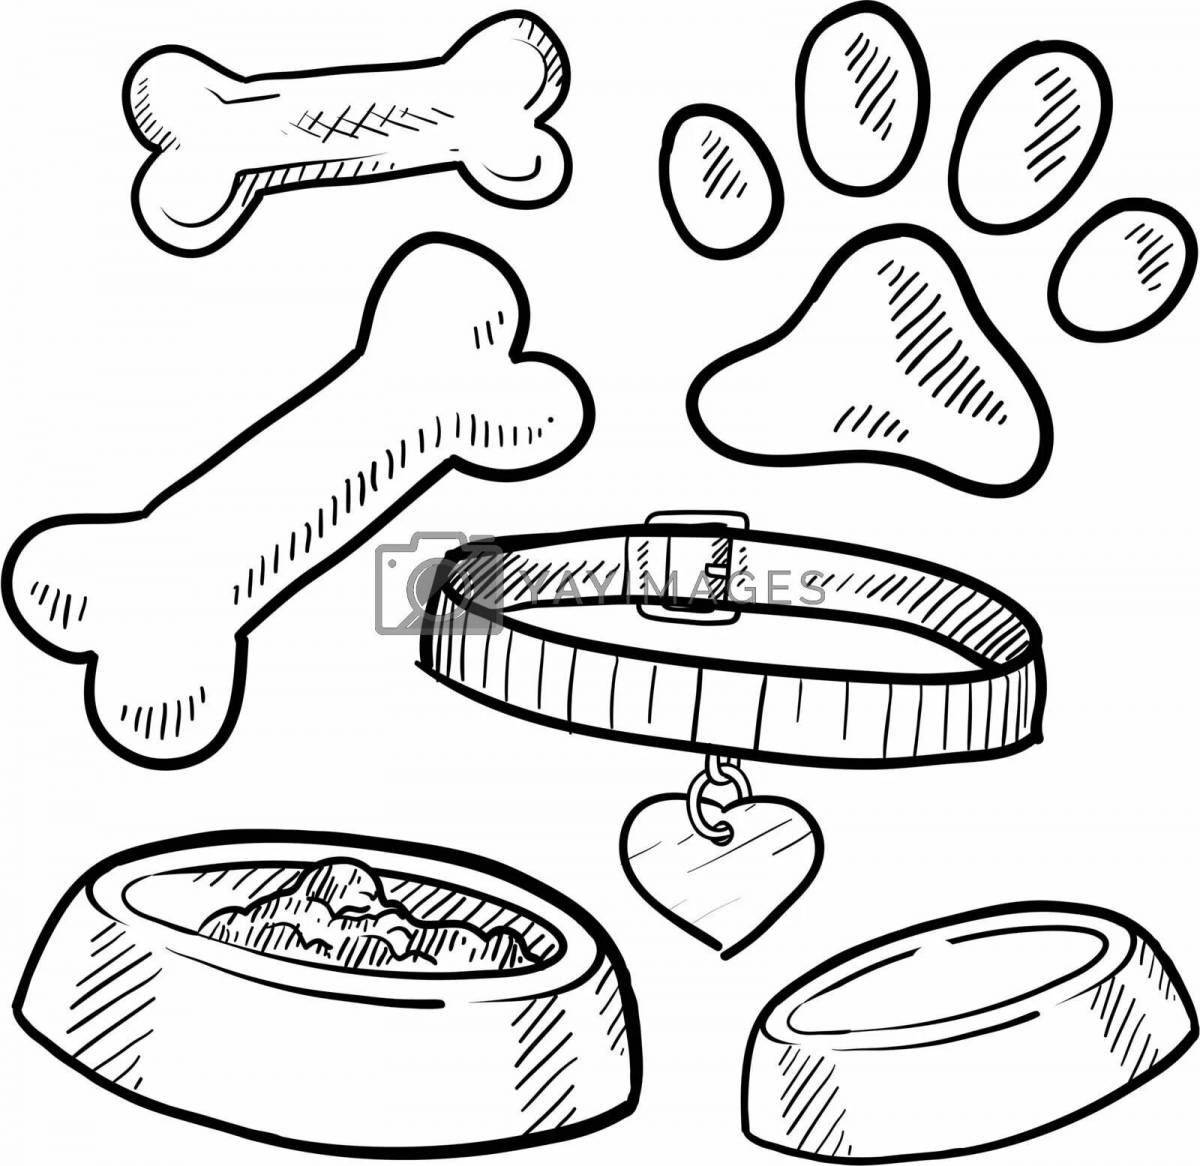 Adorable dog bones coloring page